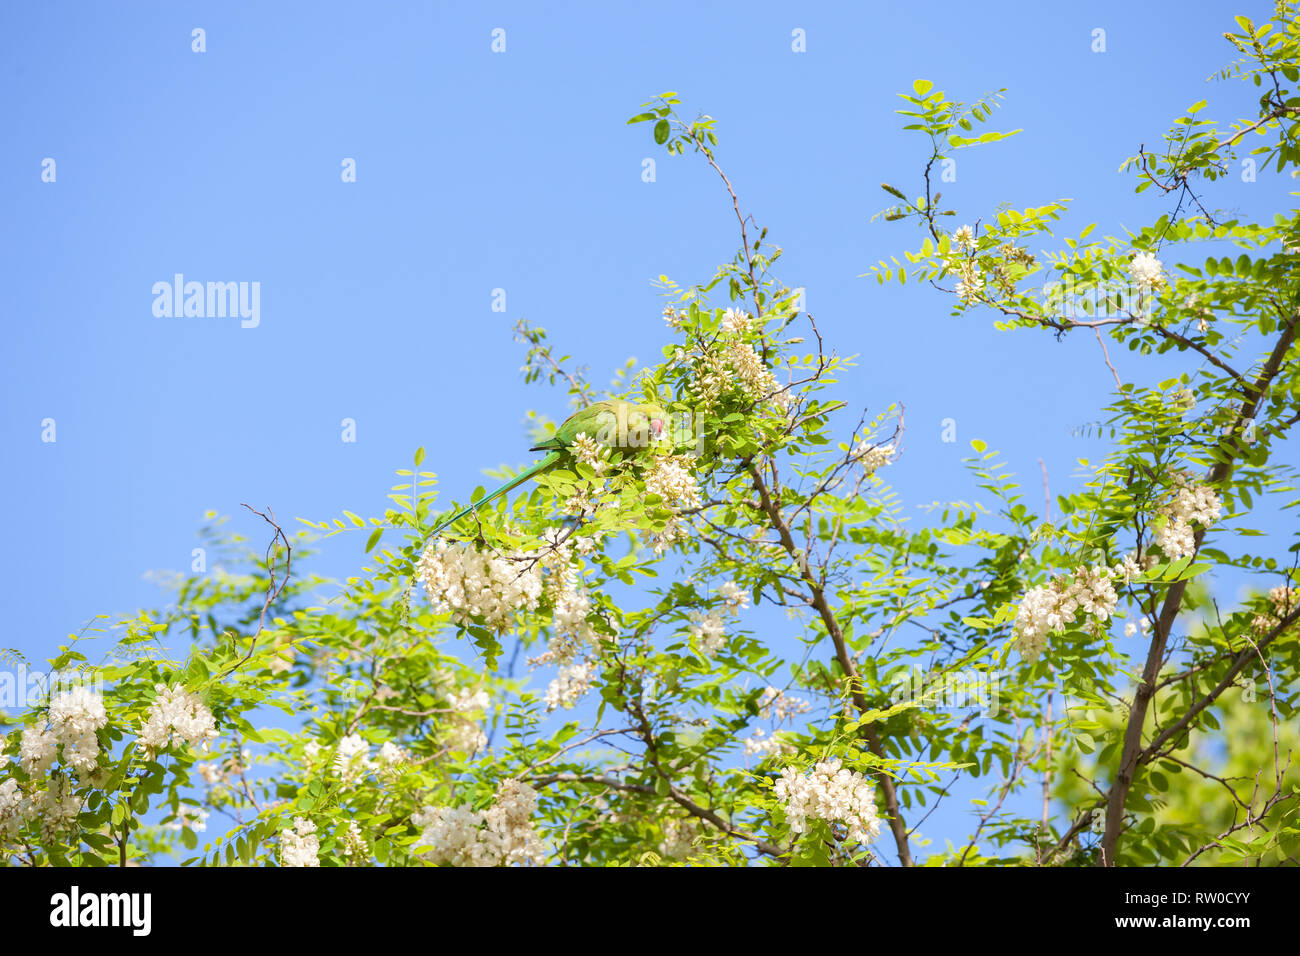 Niederlassungen der blühende Akazie (Robinie) gegen den blauen Himmel und grüne Sittich essen Acacia von Blumen. Stockfoto